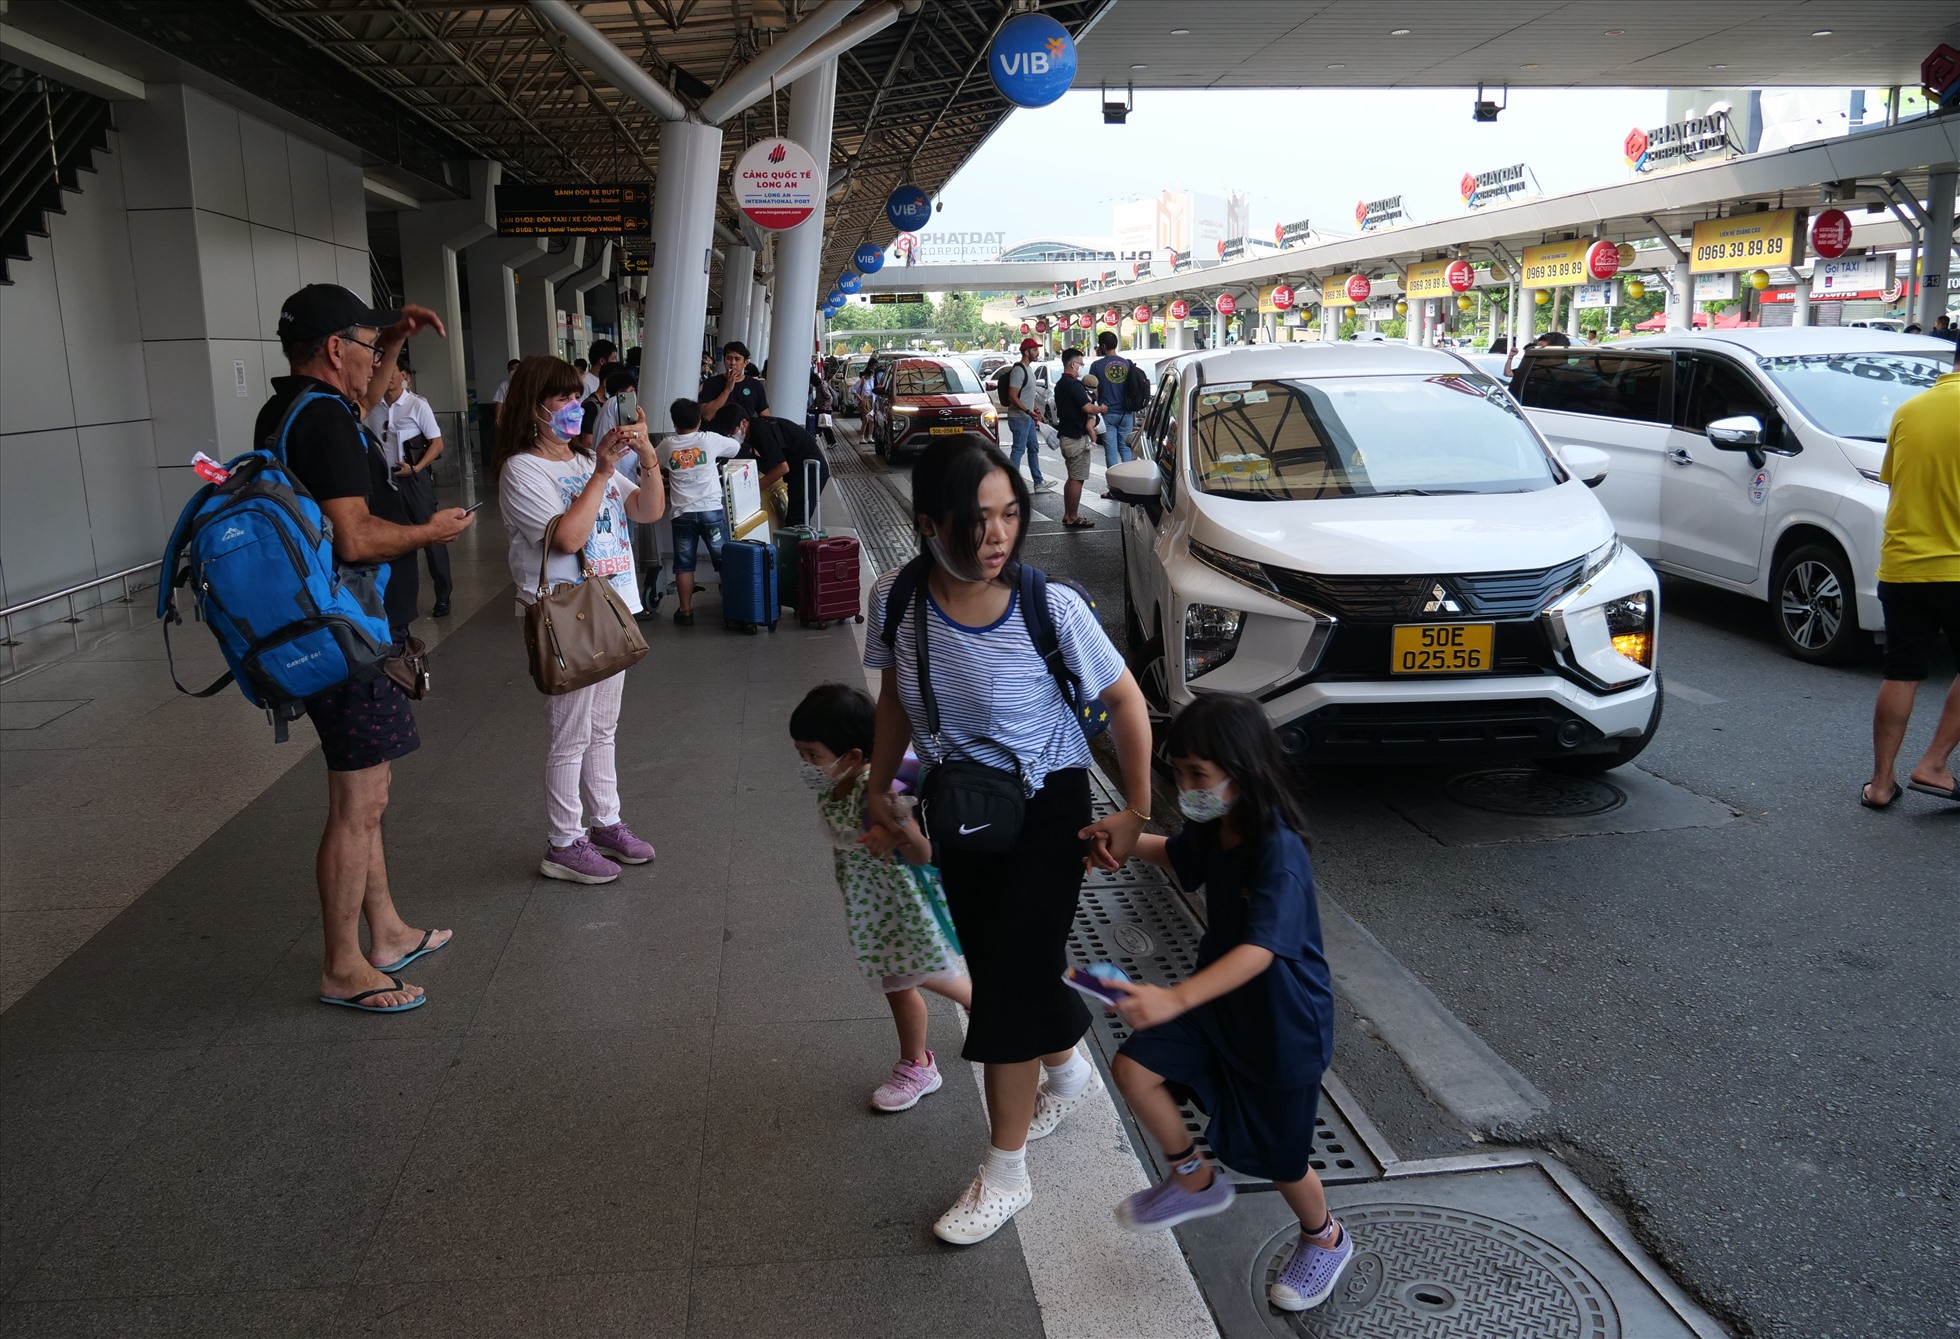 Để đảm bảo trật tự, hỗ trợ hành khách, Cảng Hàng không quốc tế Tân Sơn Nhất đã phối hợp các hãng xe taxi, xe hợp đồng, xe công nghệ để tăng số xe phục vụ tại sân bay trong dịp lễ; hướng dẫn hành khách từ cửa ga quốc tế đến ra tới bãi đón xe công nghệ